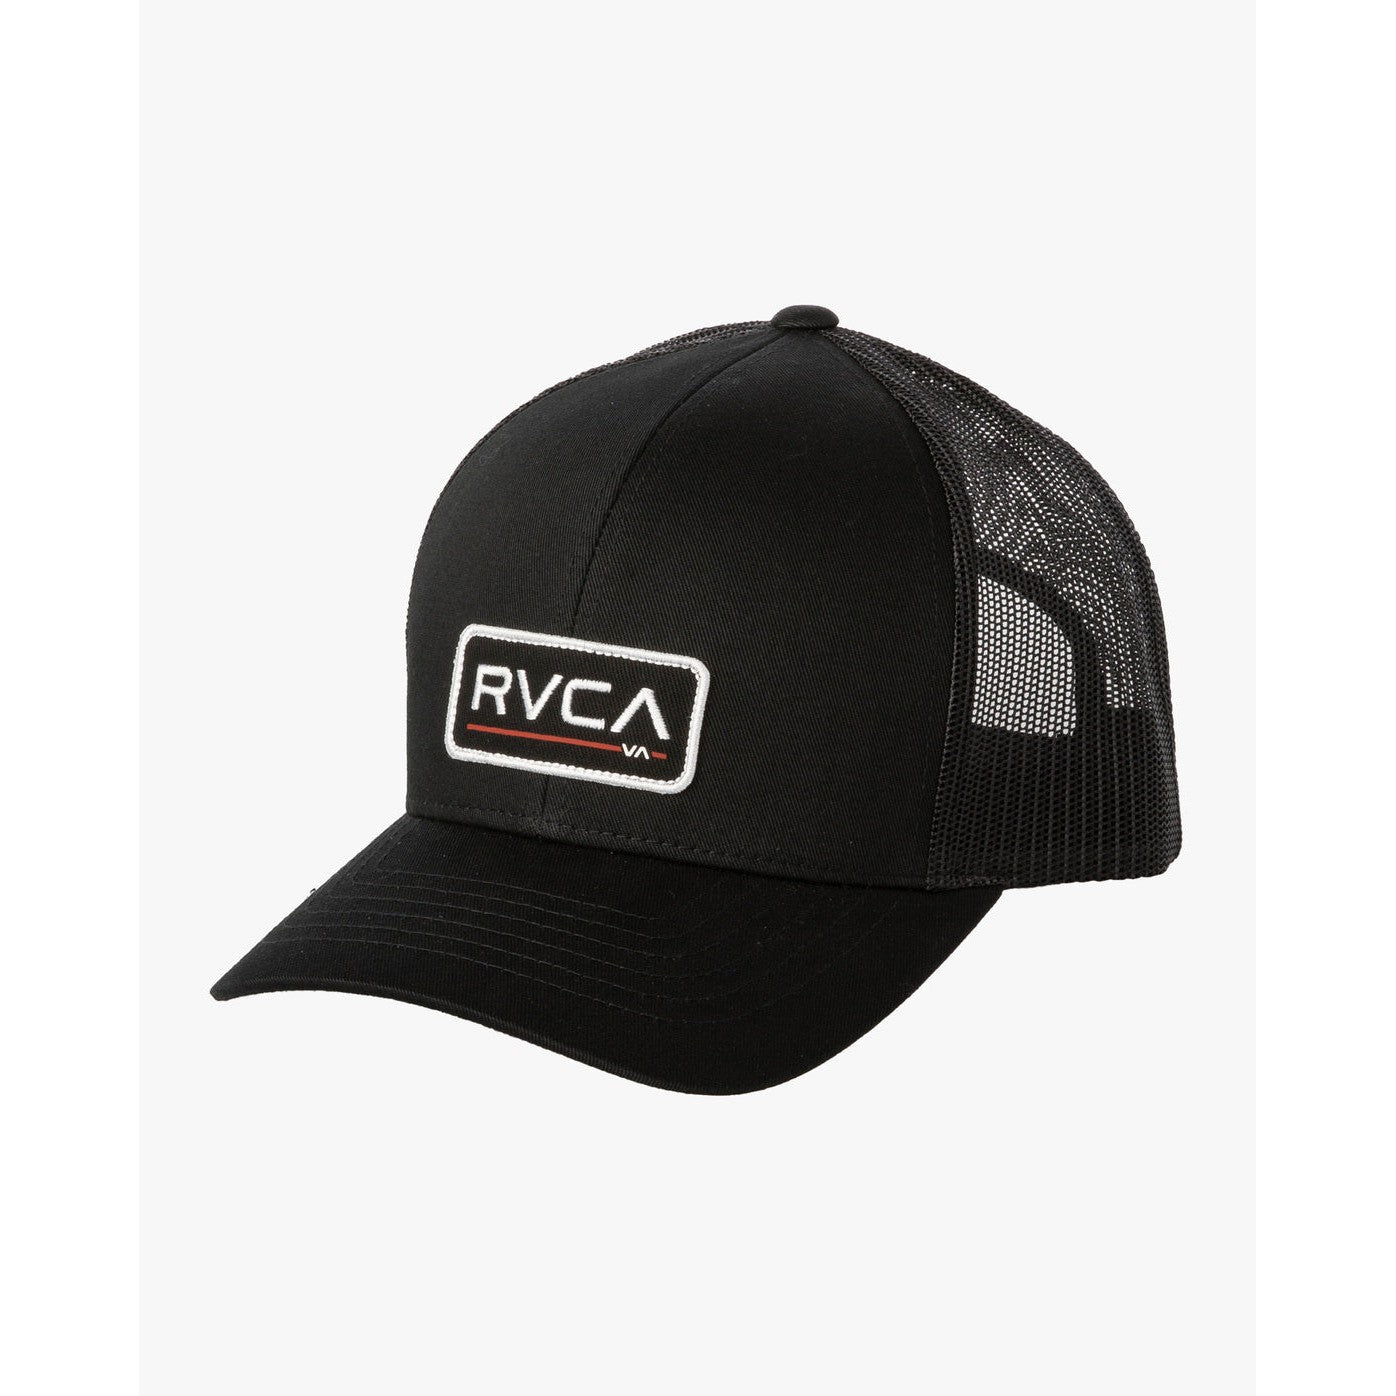 RVCA Ticket Trucker Hat - Black